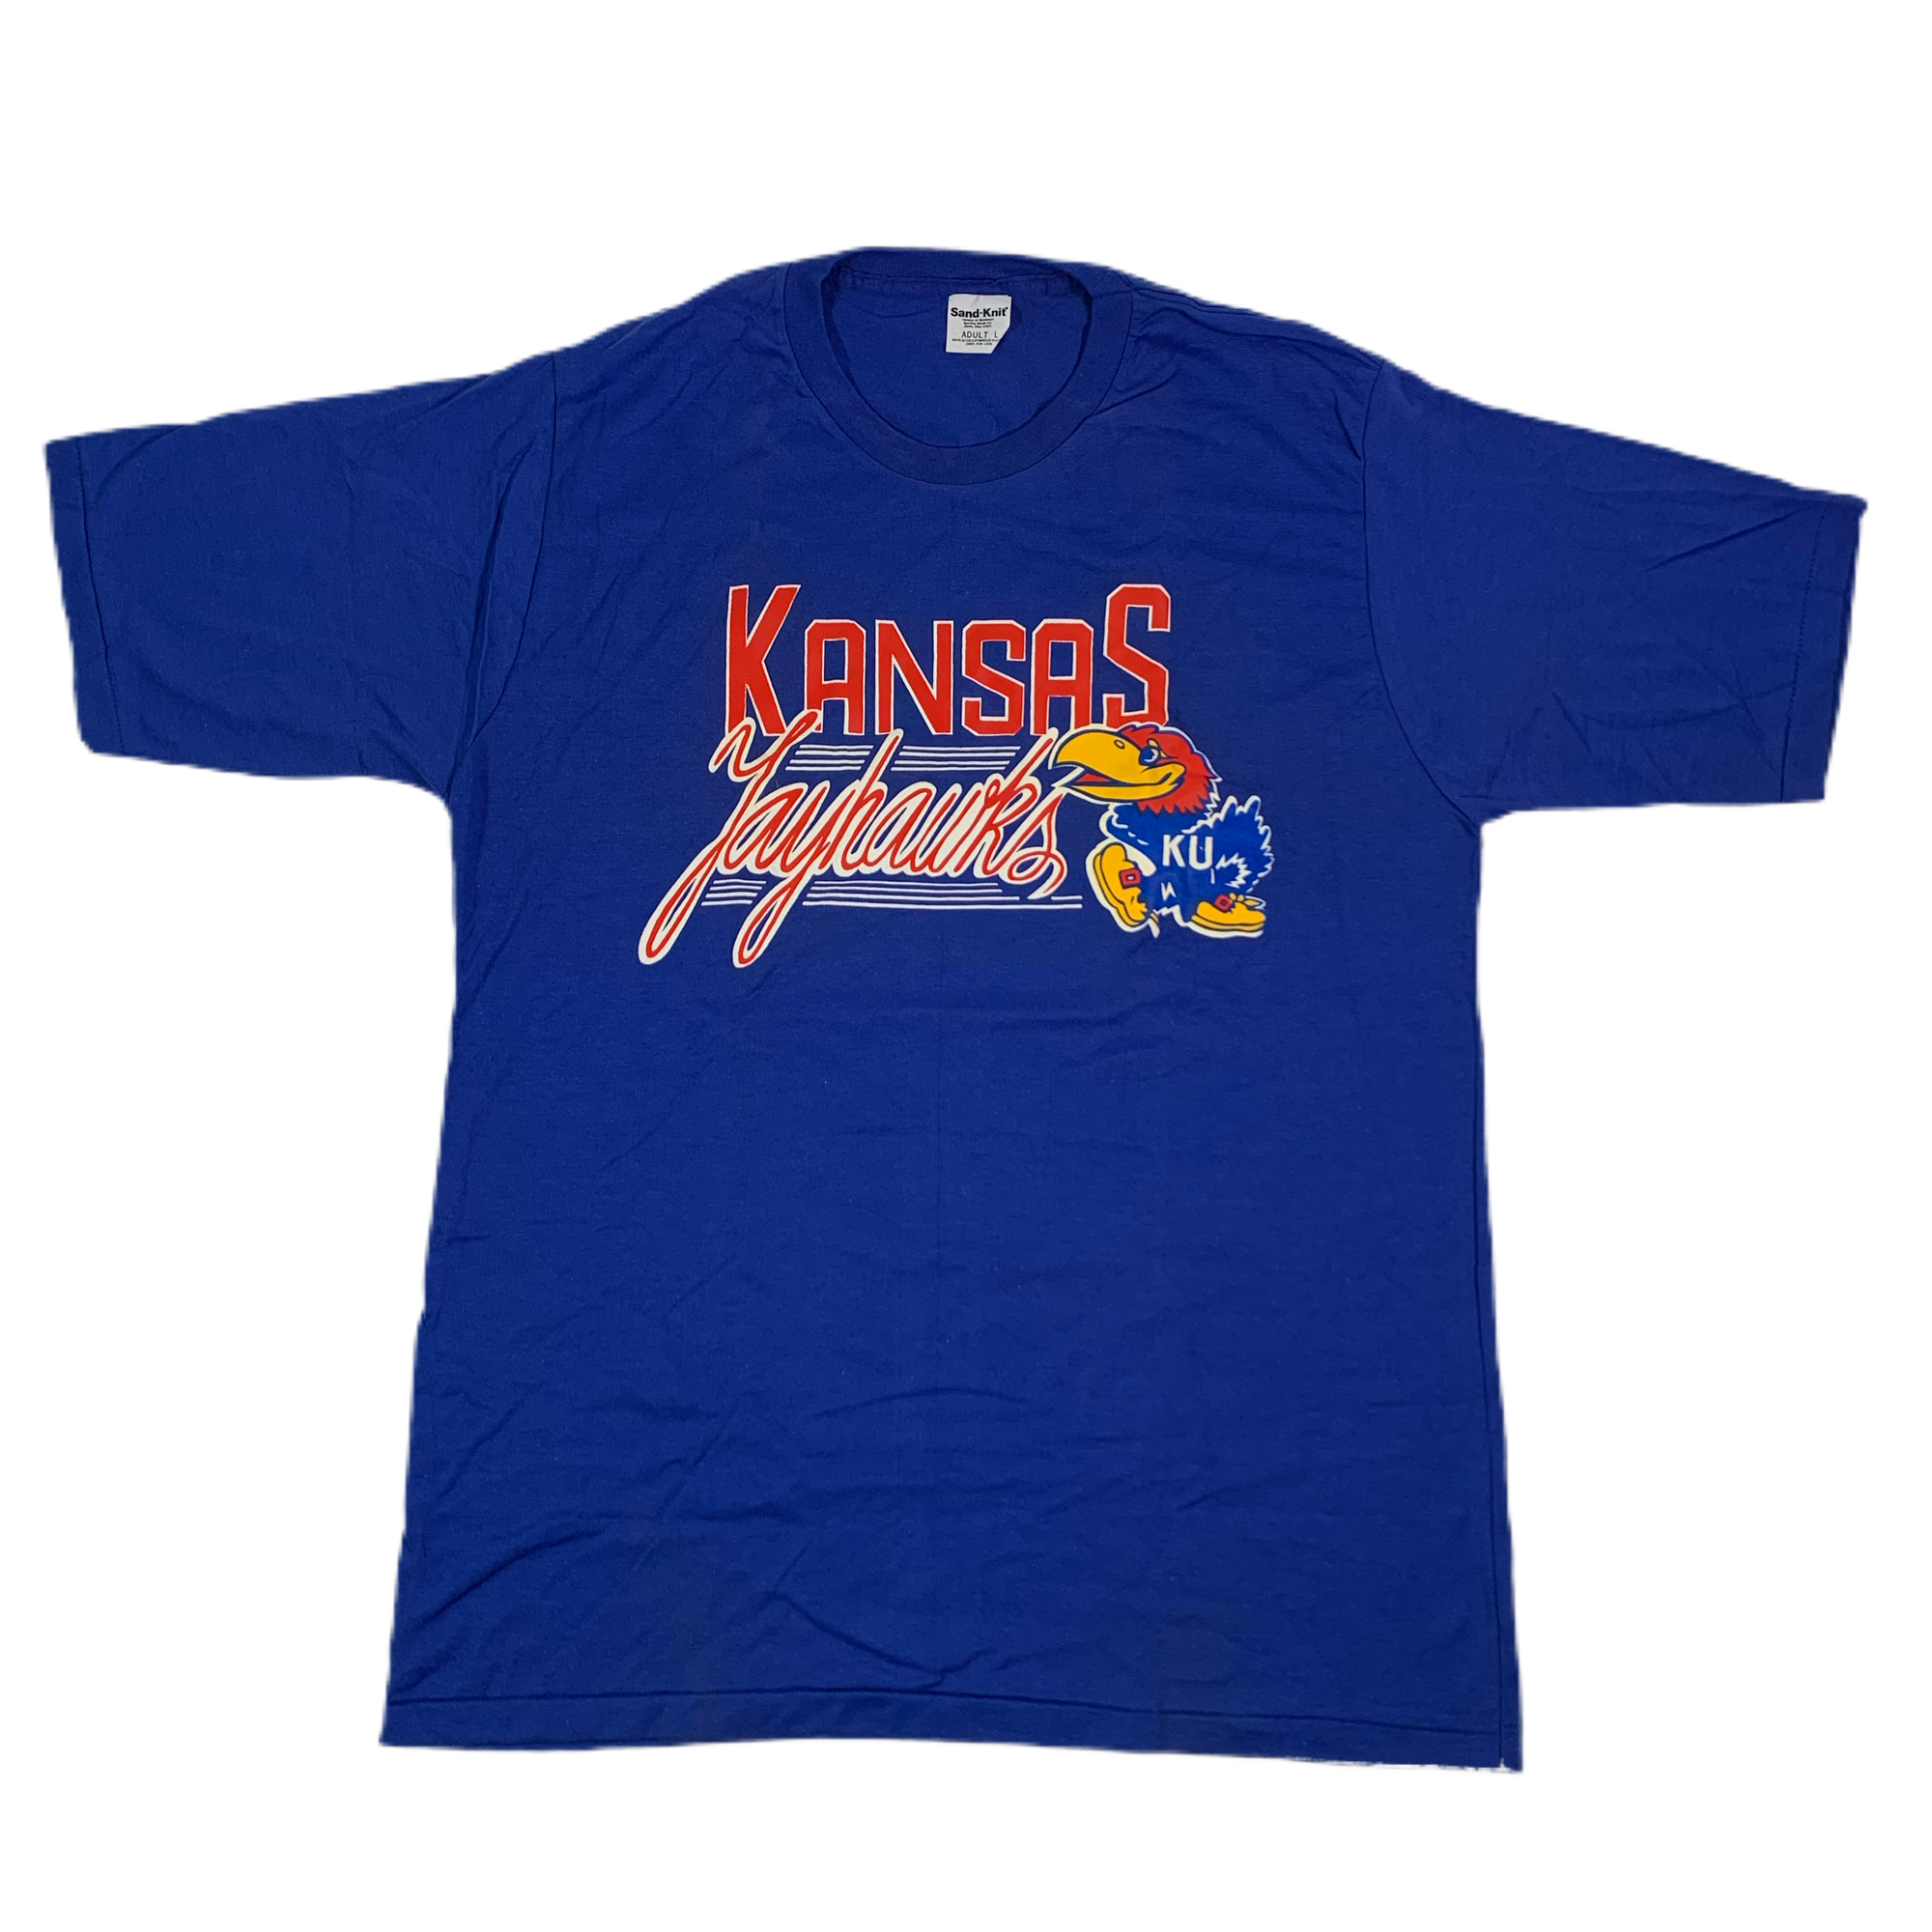 Vintage Kansas "Jayhawks" Sand-Knit T-Shirt - jointcustodydc